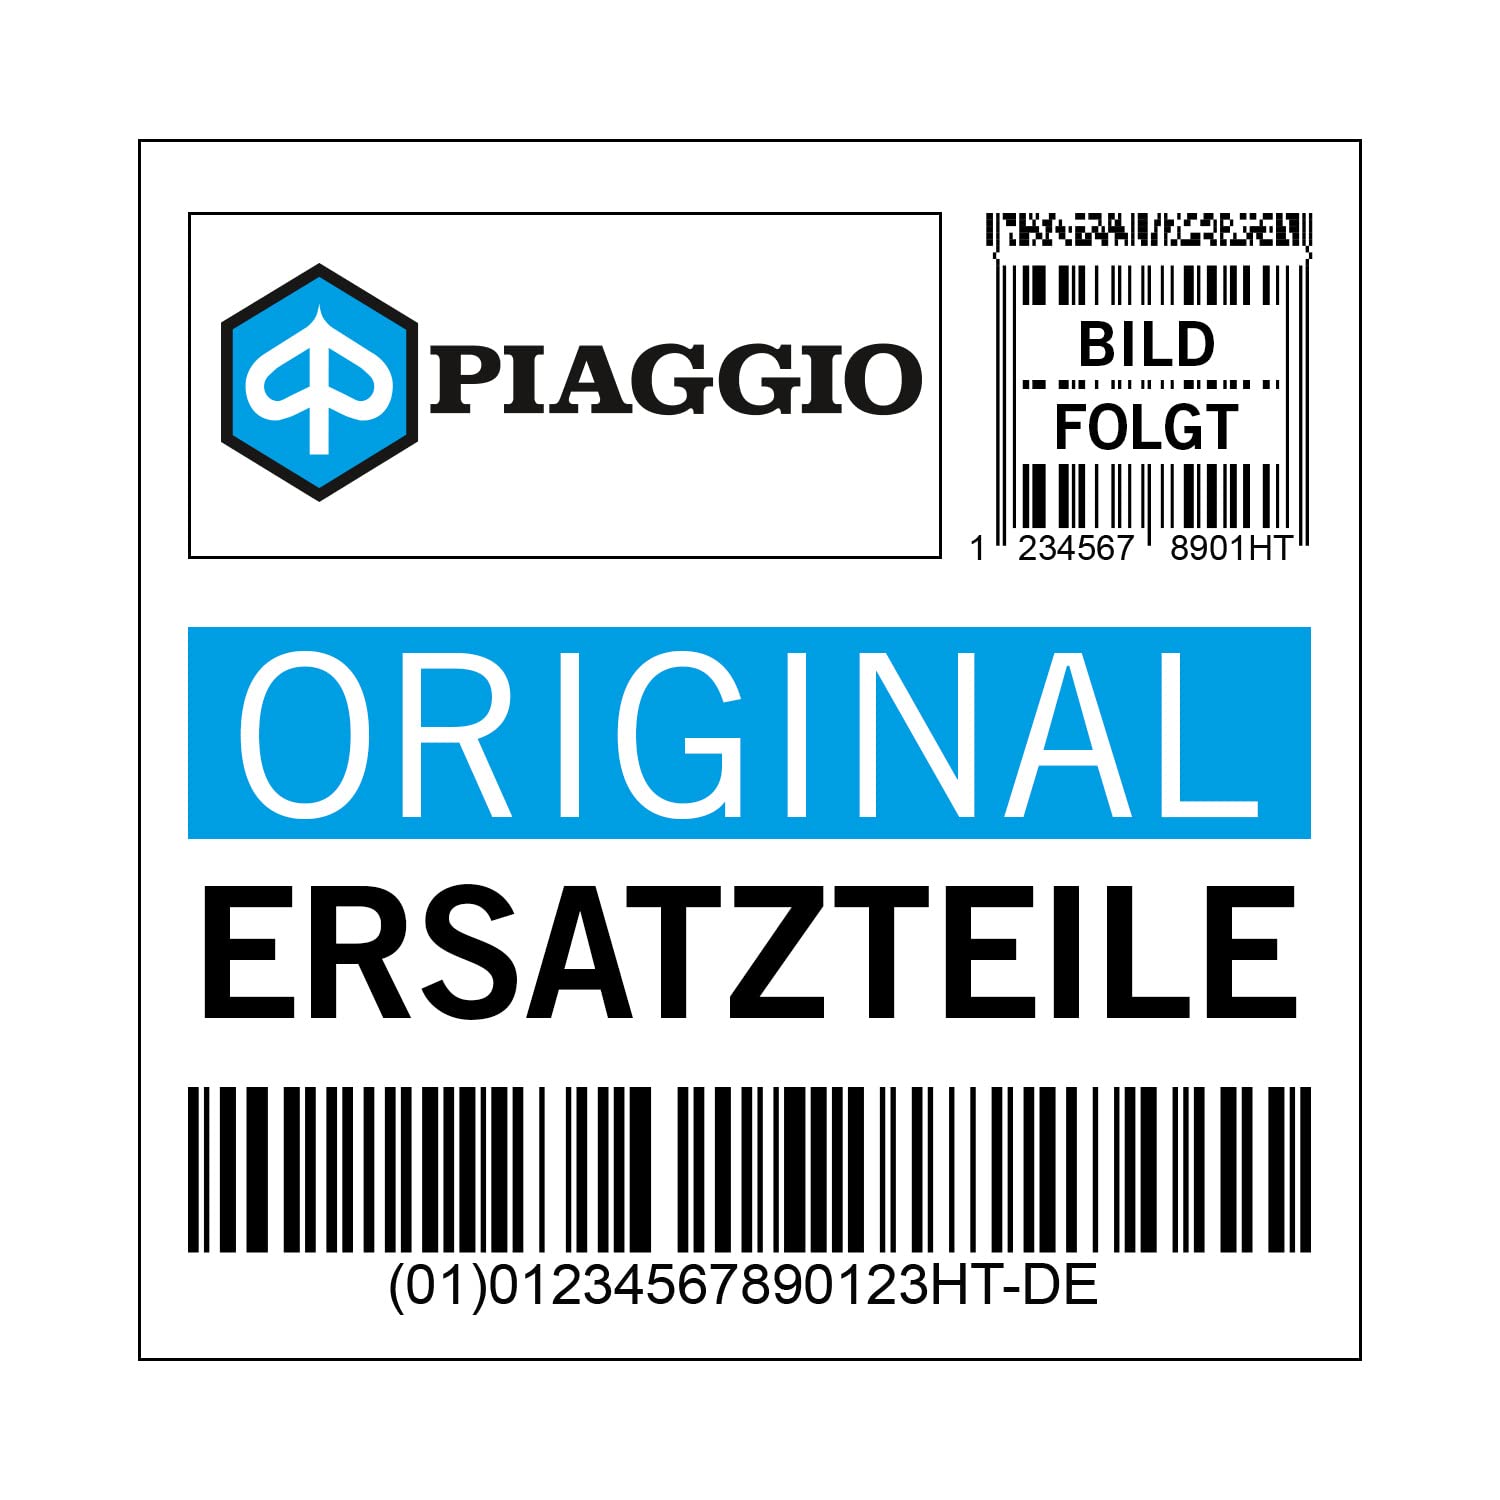 Schraubbolzen Piaggio Zylinderkopf für Ape 50, 015559 von Maxtuned